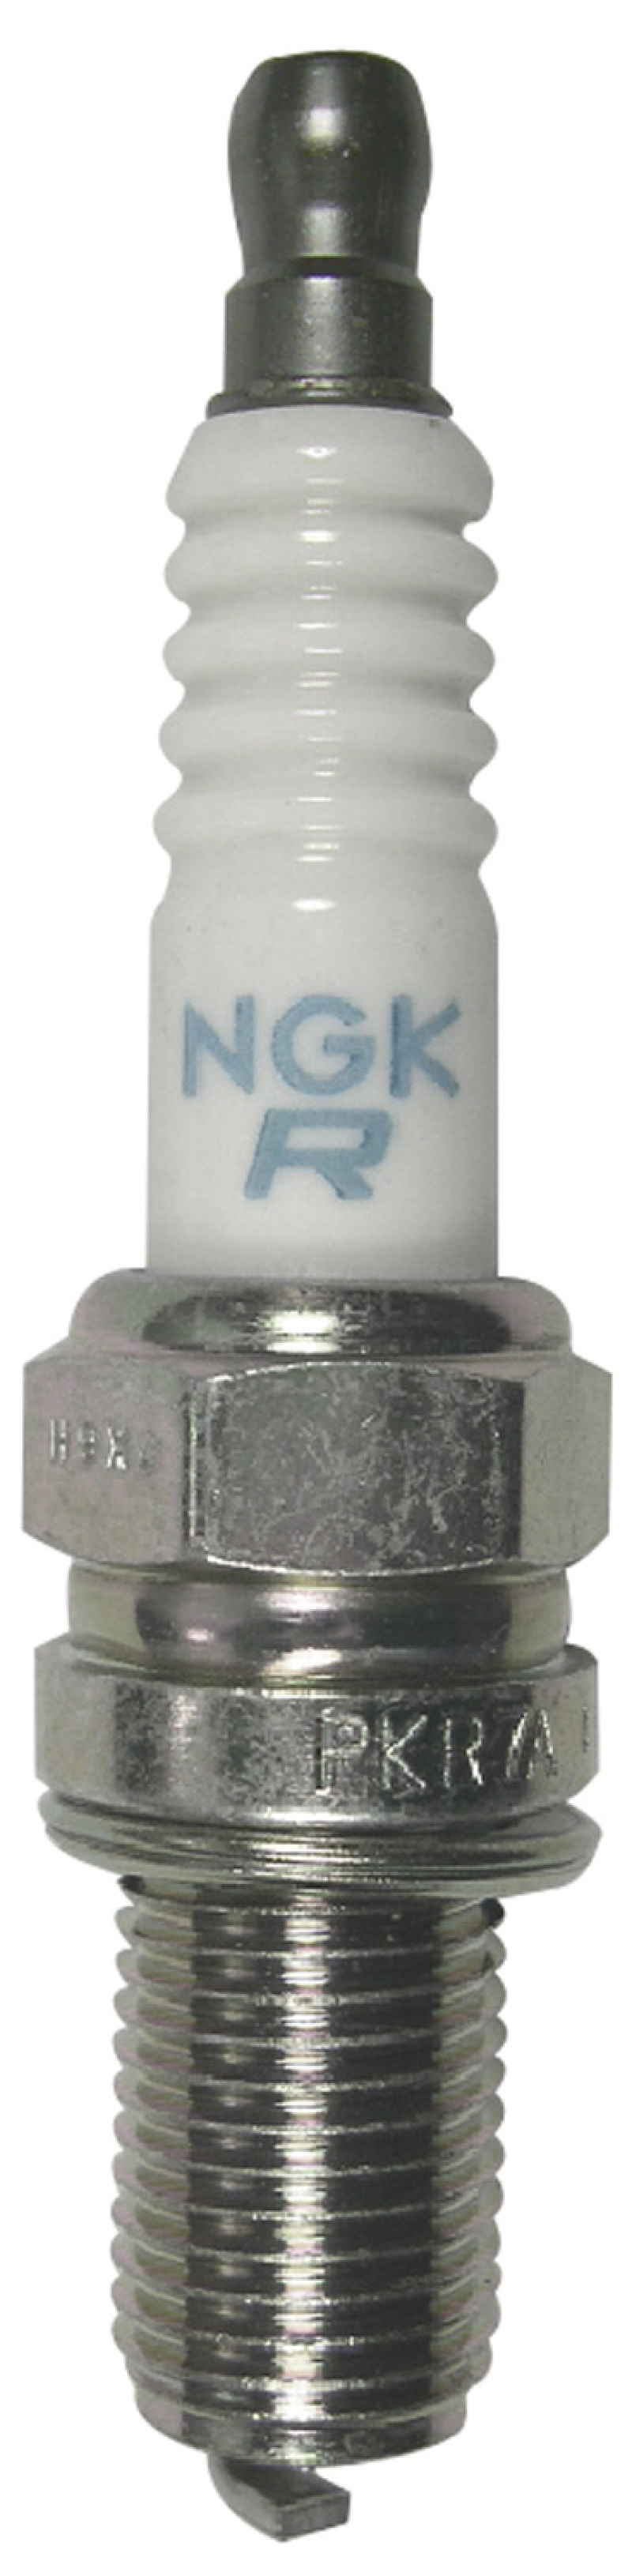 NGK Laser Platinum Spark Plug Box of 4 (PGR5C-11) - 5760